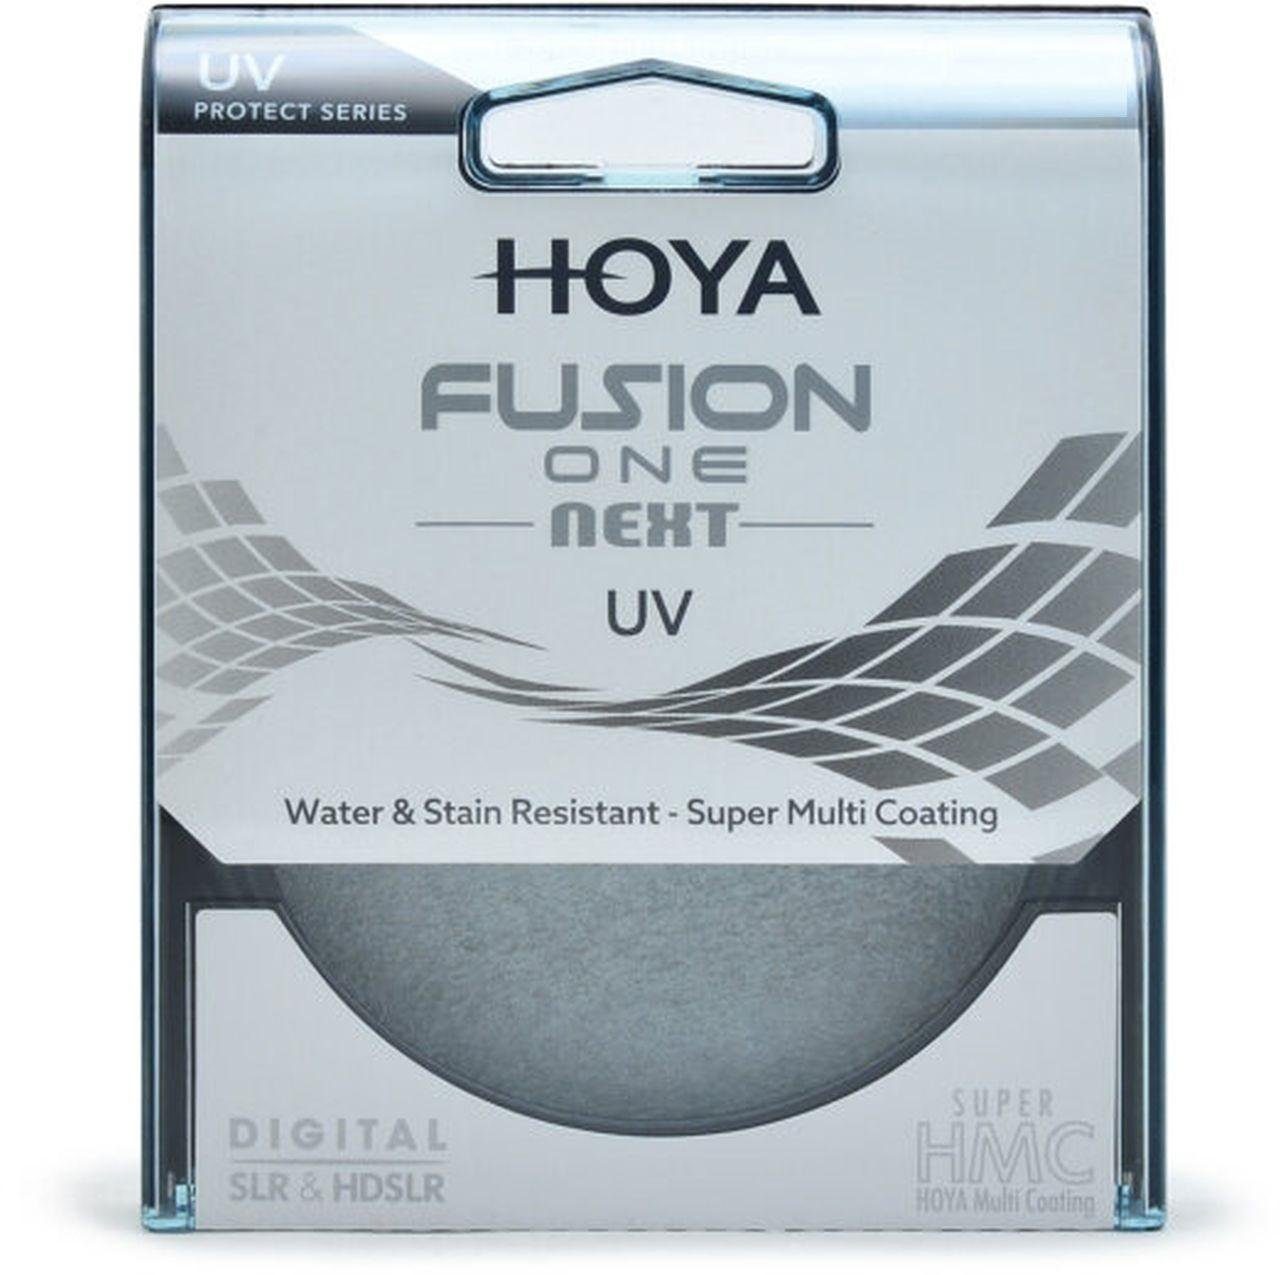 Hoya Fusion ONE Next UV-Filter 52mm Objektivzubehör